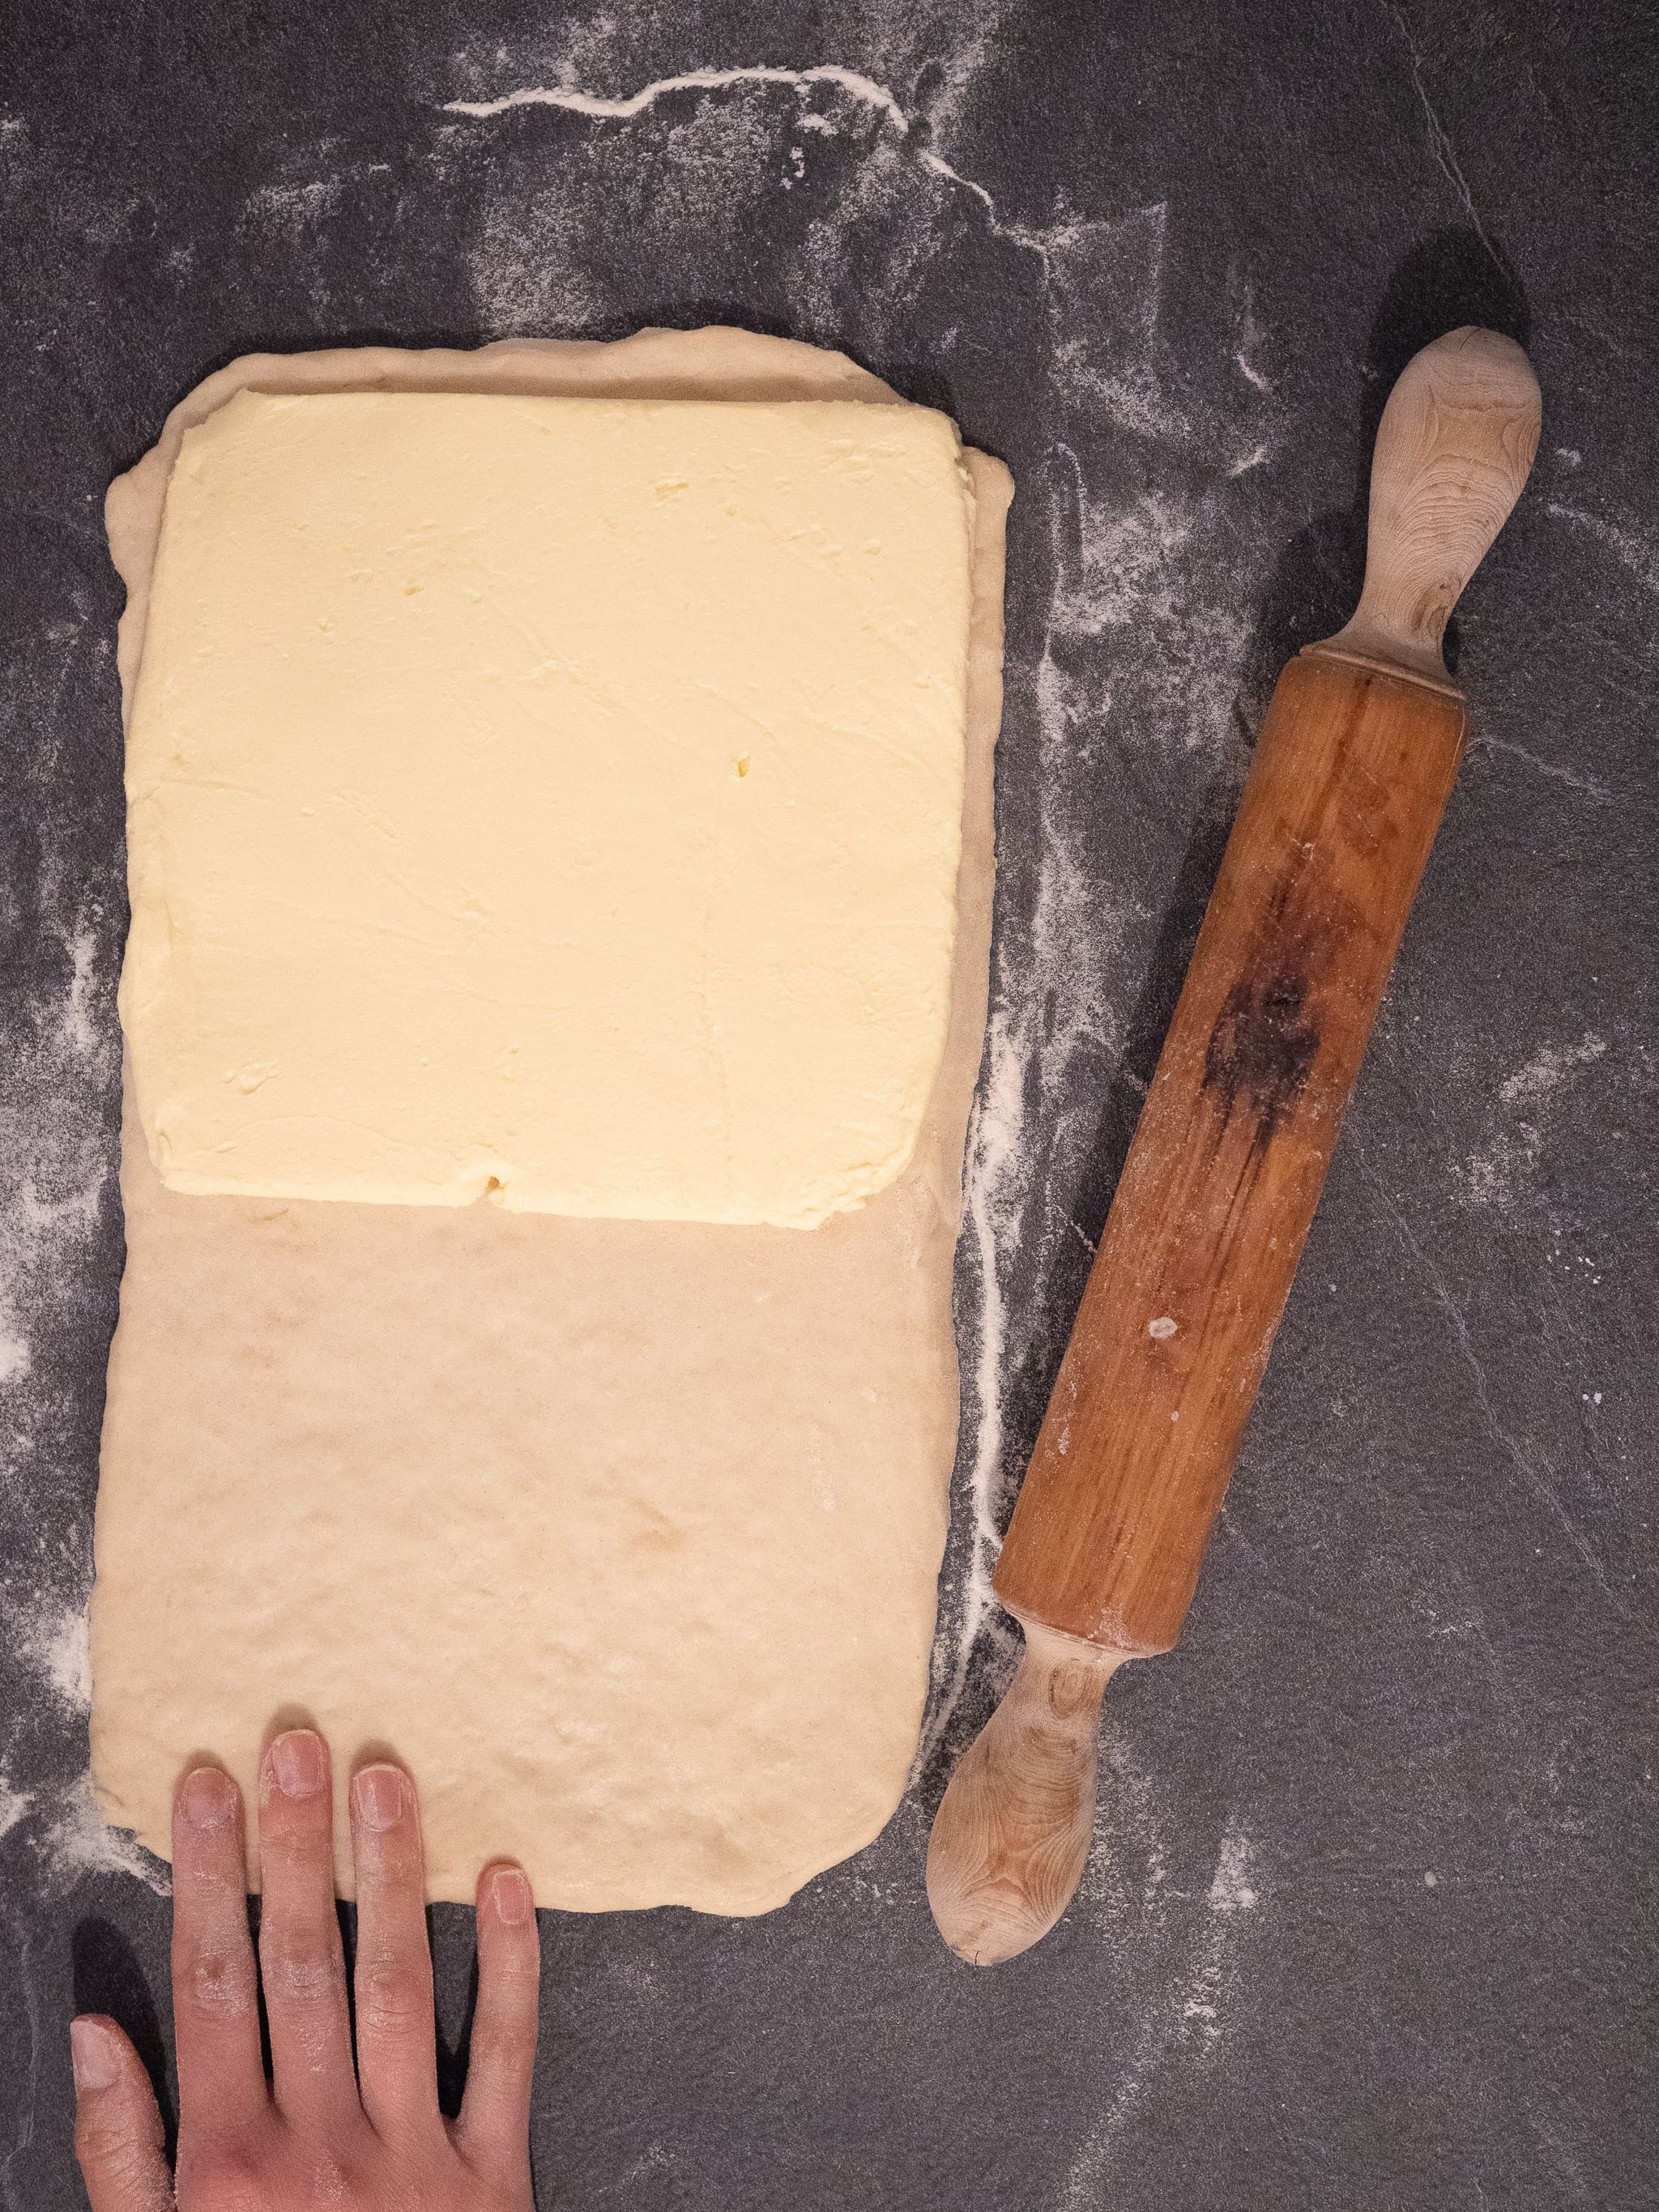 positionner la margarine sur la moitié supérieure de la pate